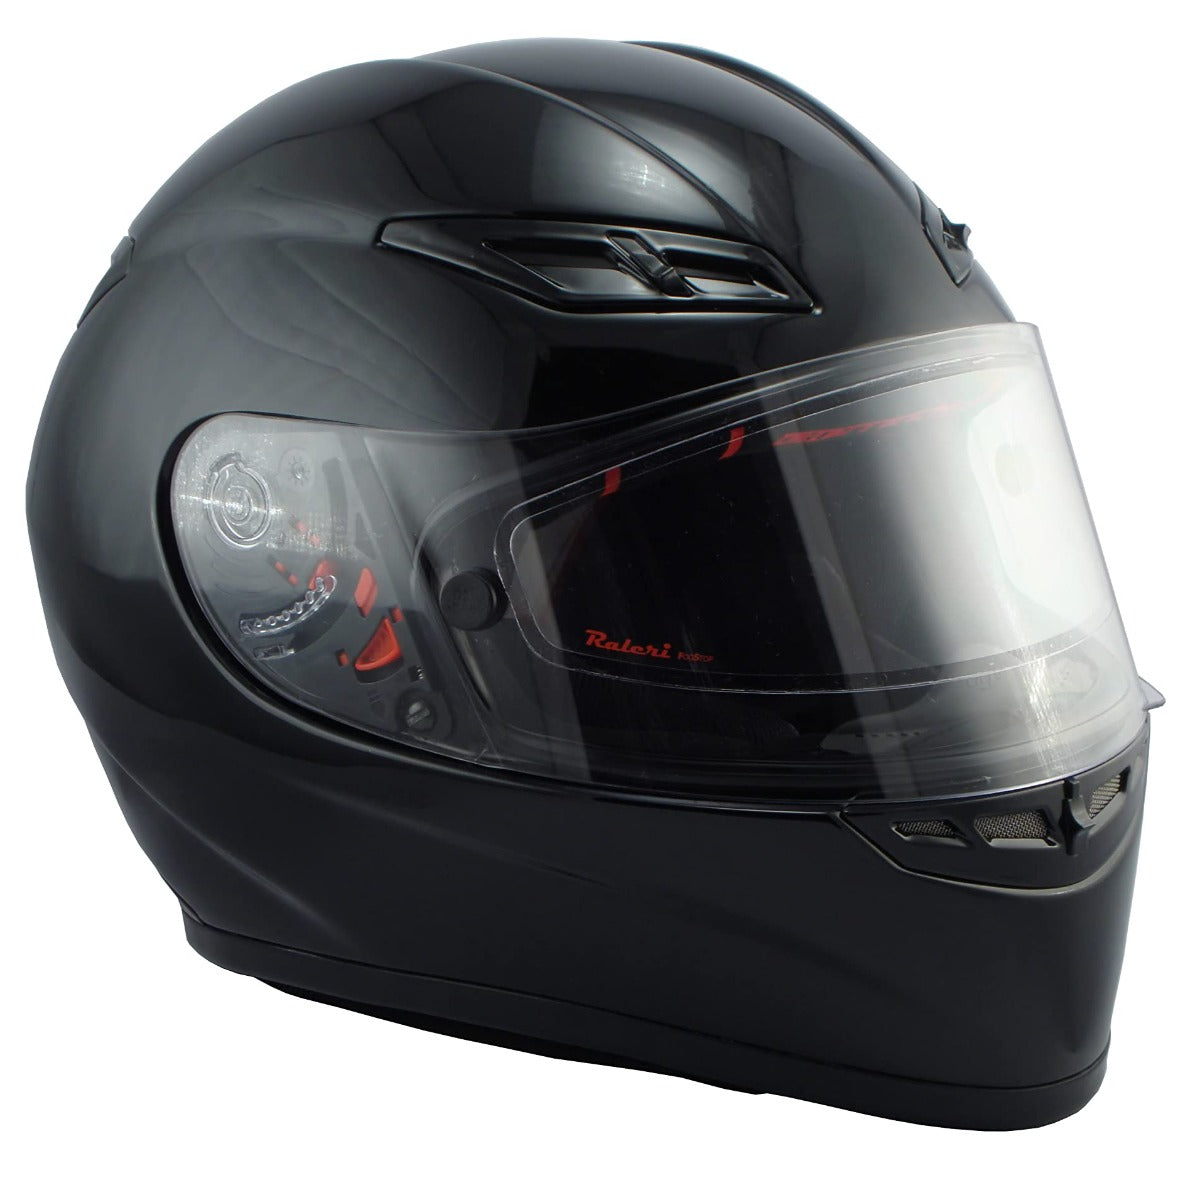 Fogstop Anti Fog Visor Insert for Dualsport Helmets - Clear Large